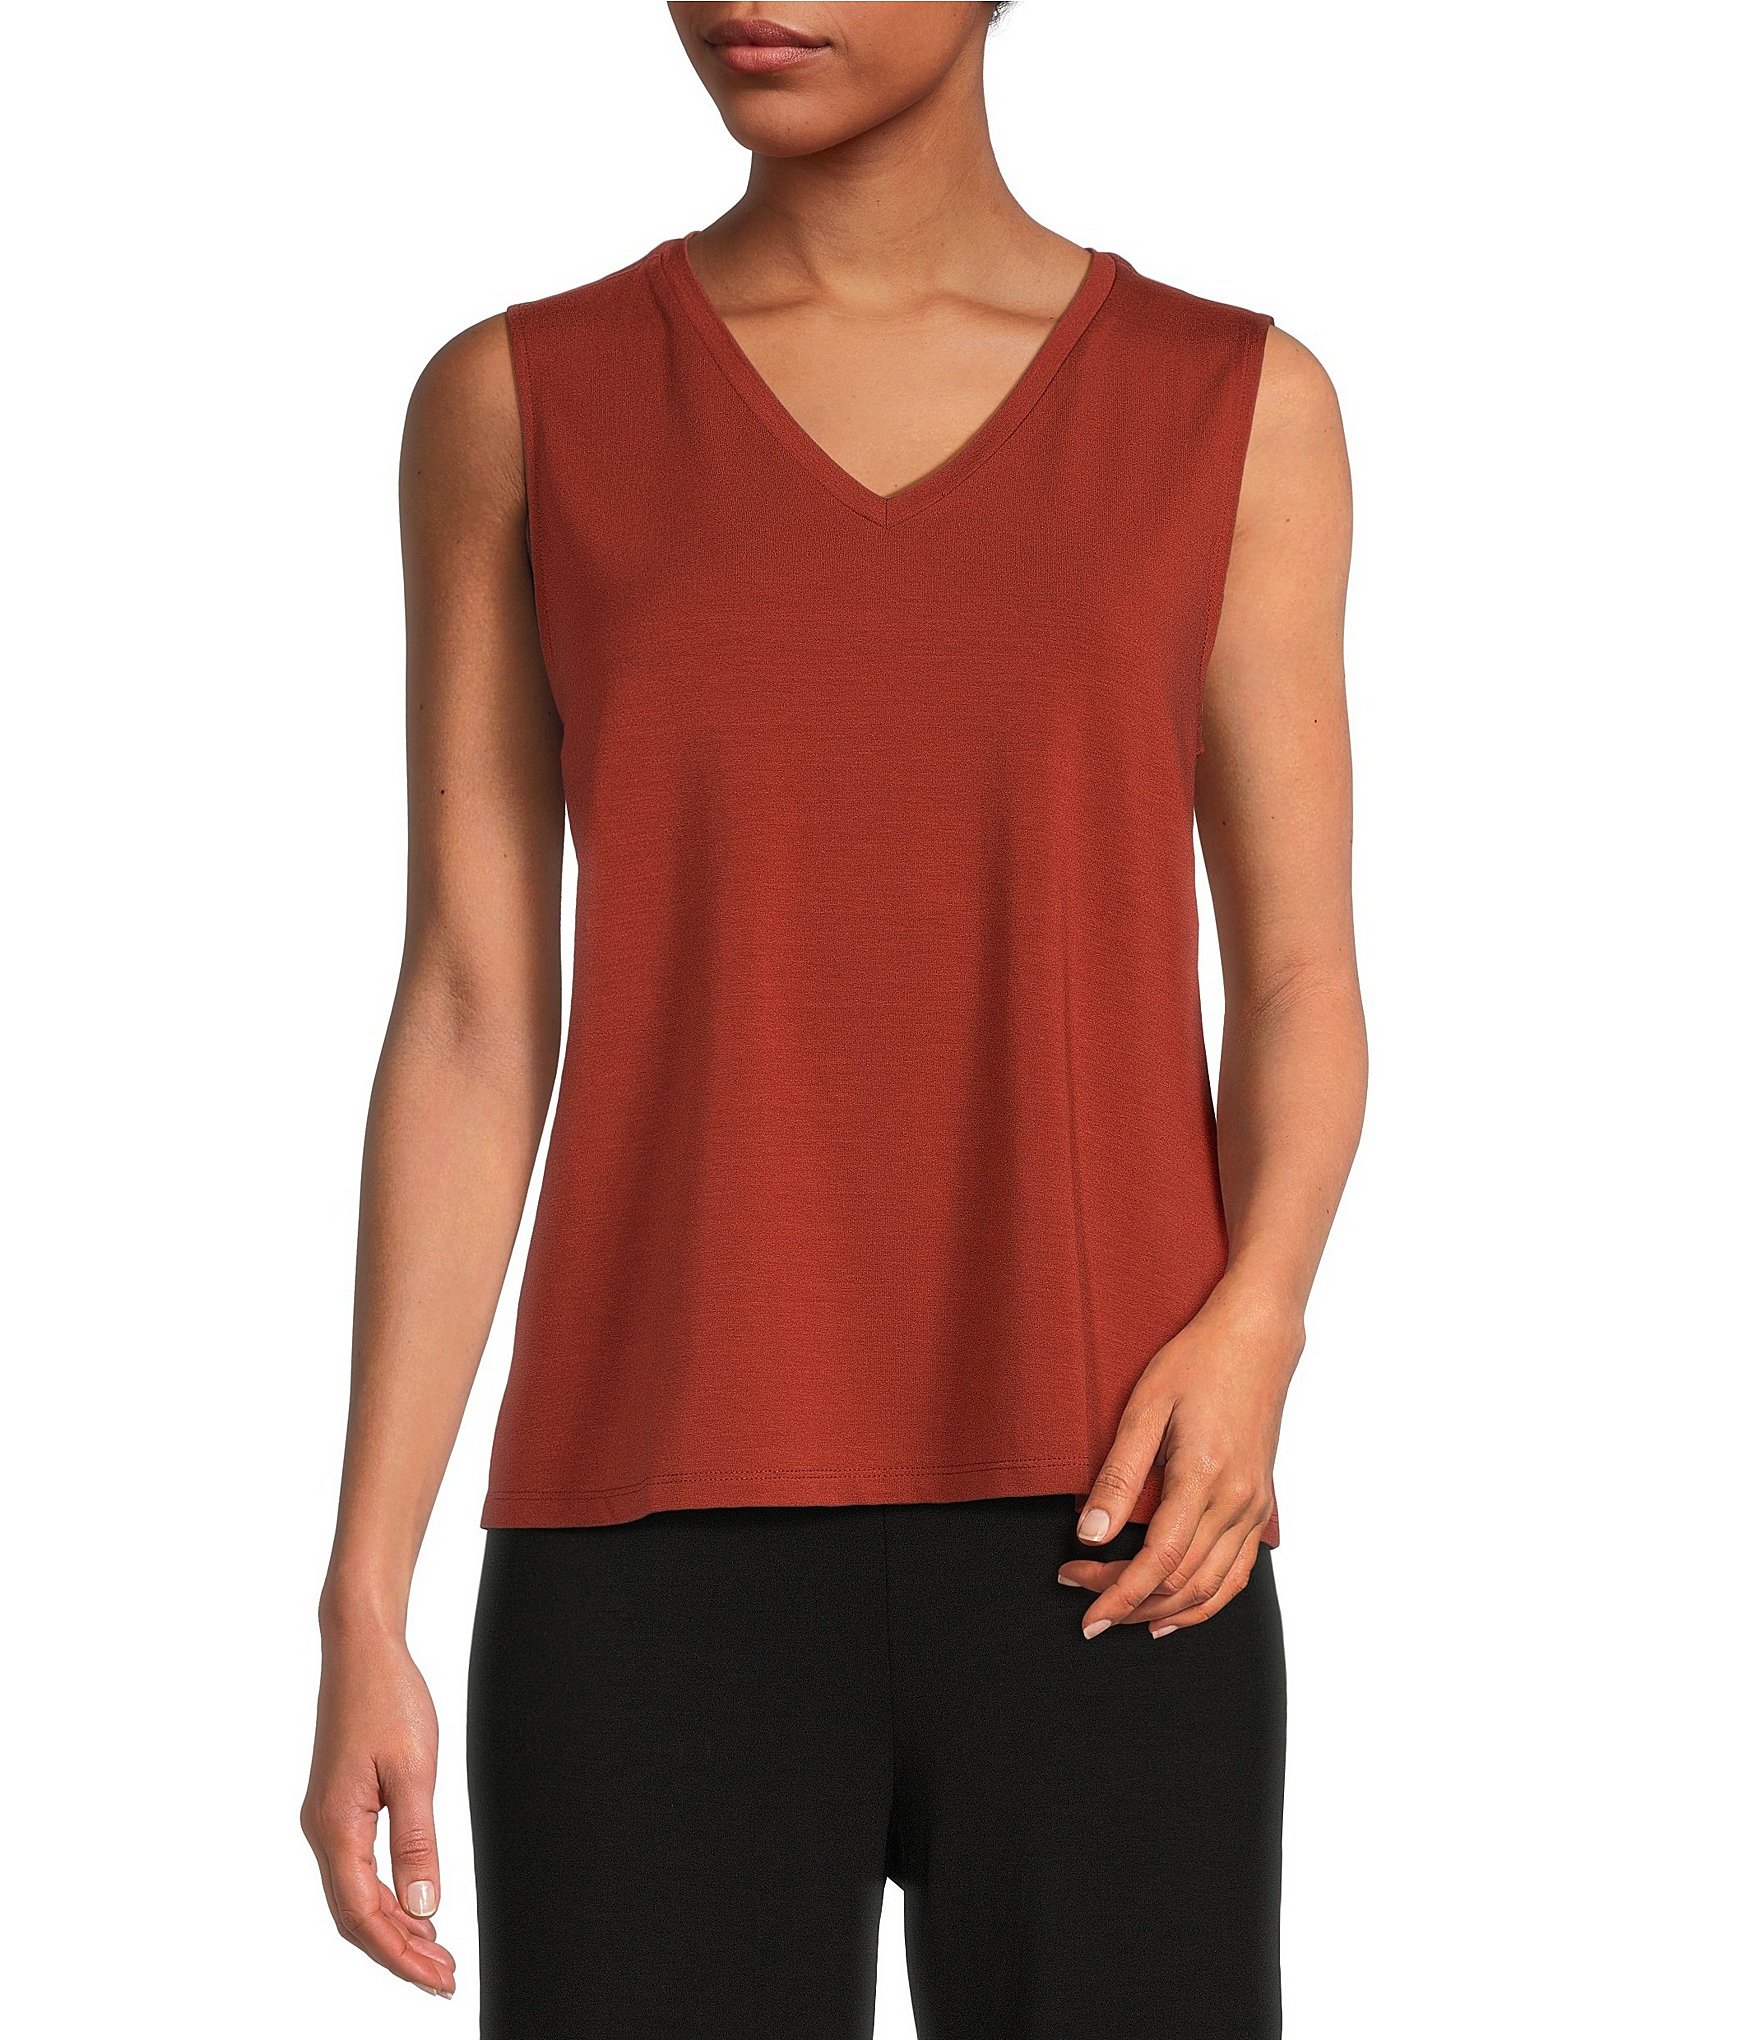 sleeveless blouse: Women's Tops & Tops